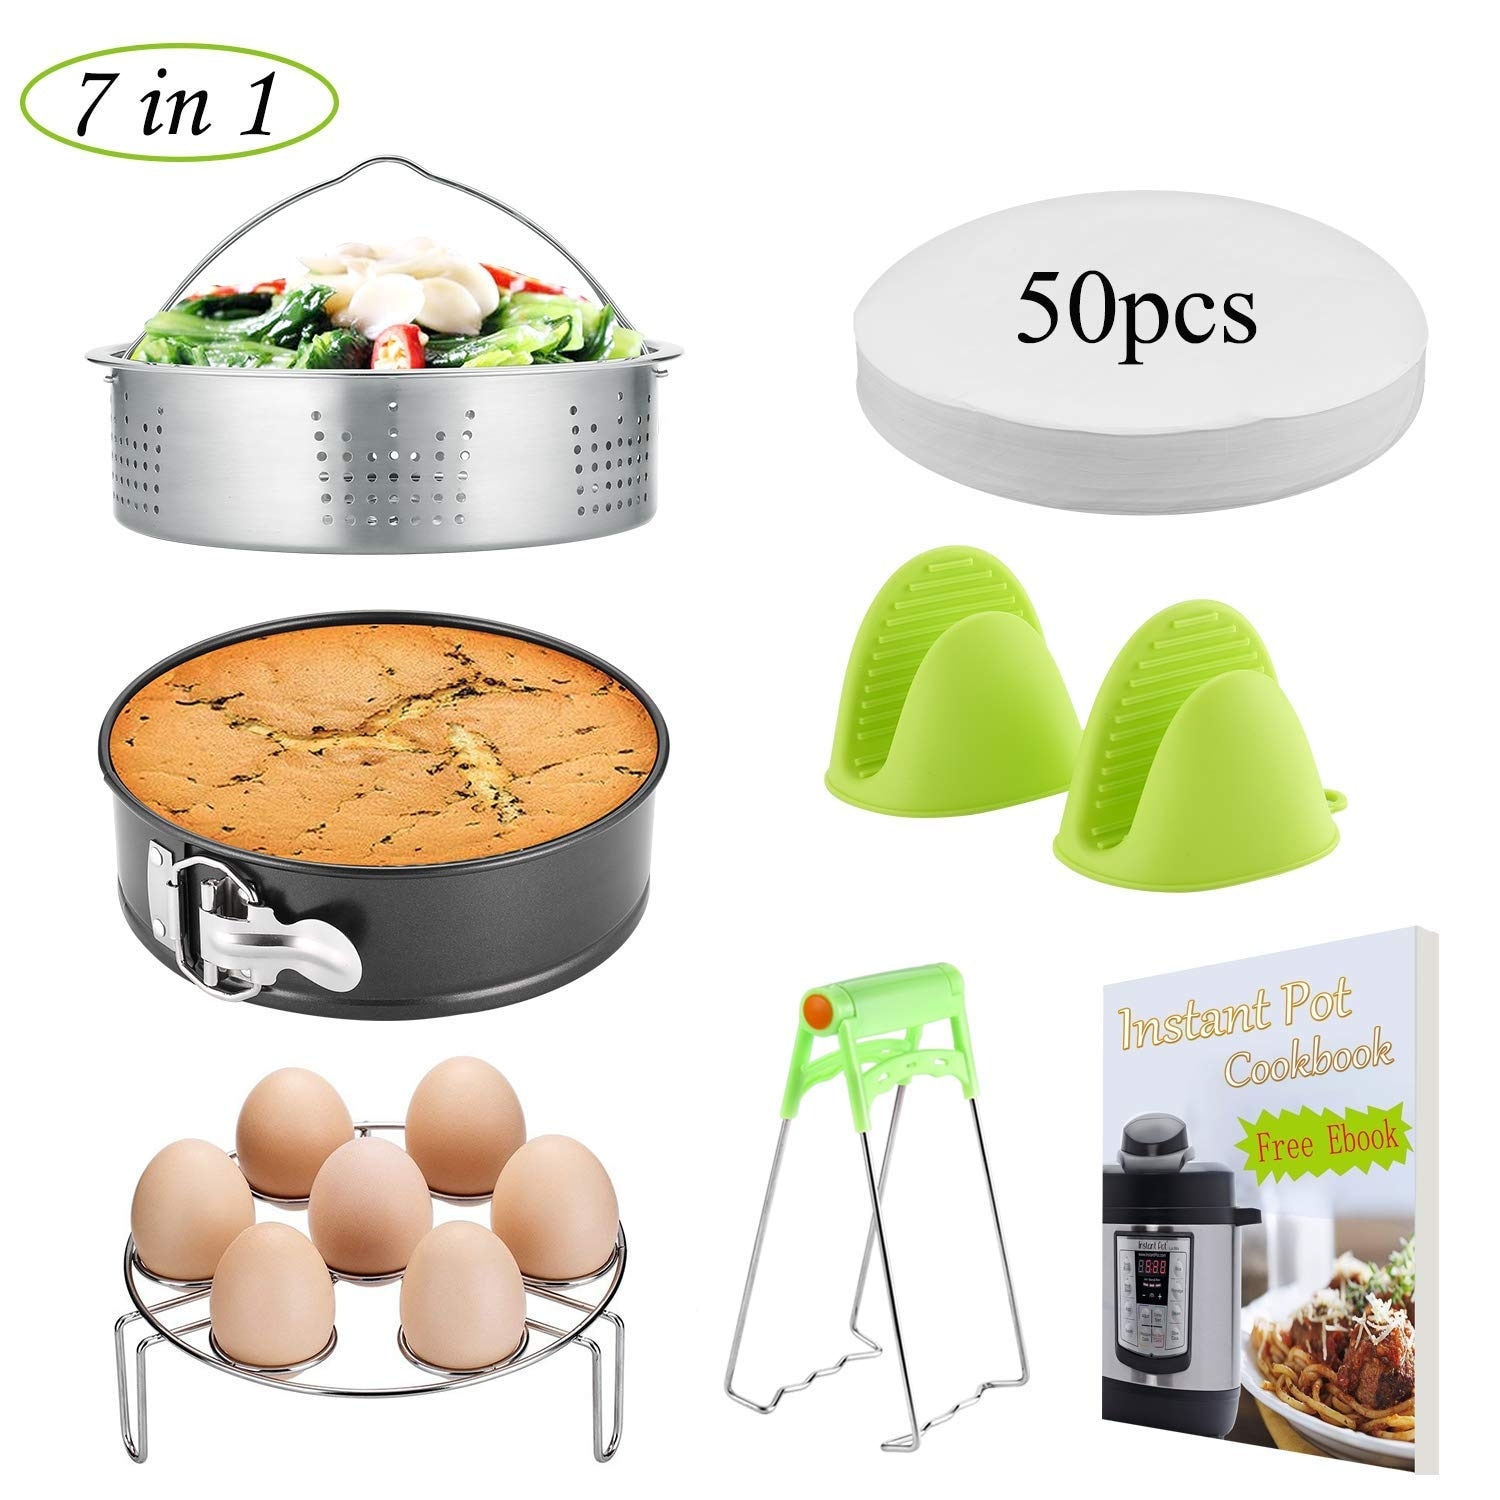 FITNATE 8 Pack Cooking Instant Pot Accessories Set Steamer Basket Egg  Steamer Rack - Bed Bath & Beyond - 35096944